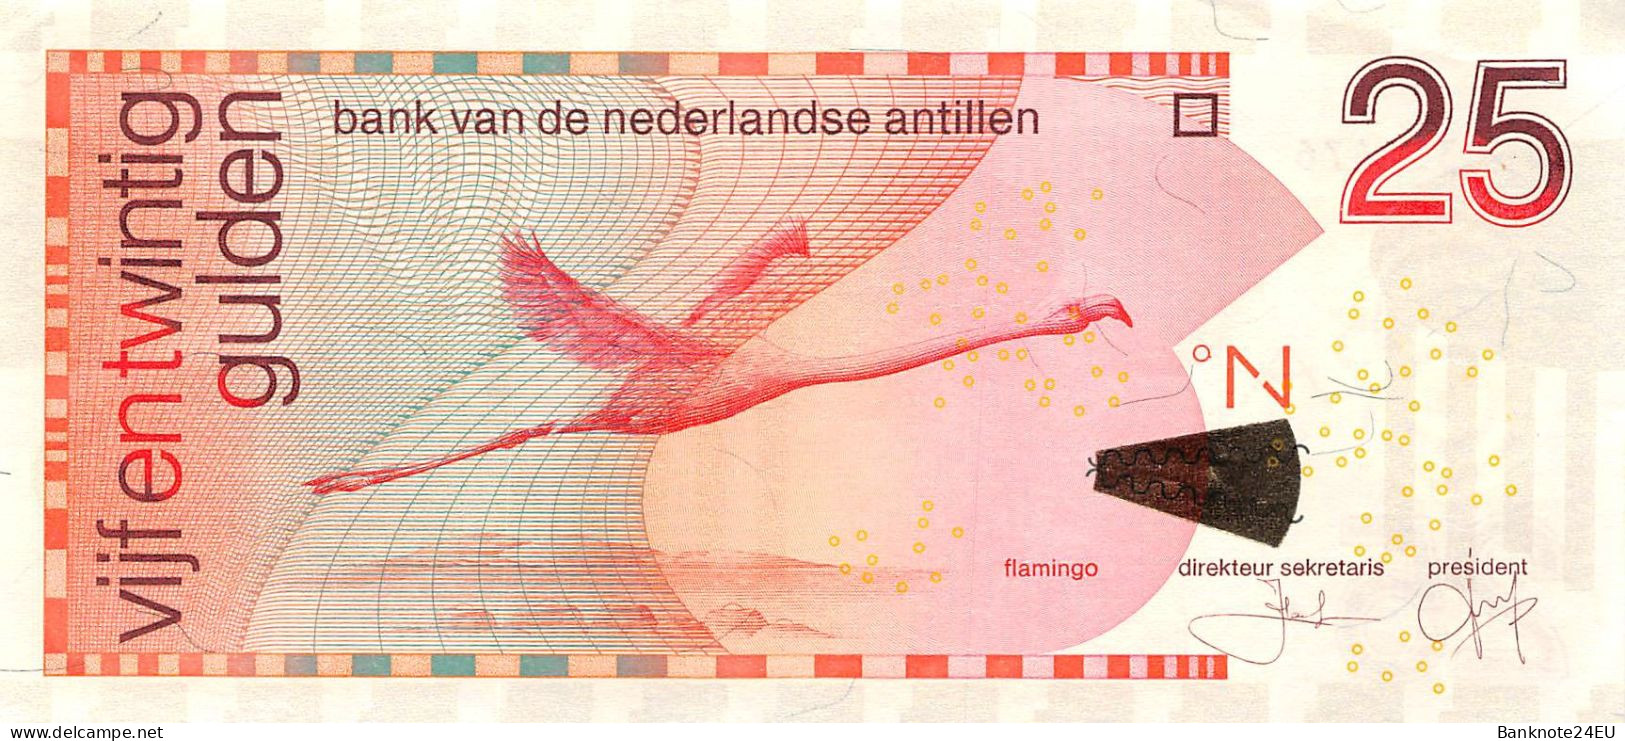 Netherlands Antilles 25 Gulden 2011 Xf Pn 29f Serienumber 4150351476 - Netherlands Antilles (...-1986)